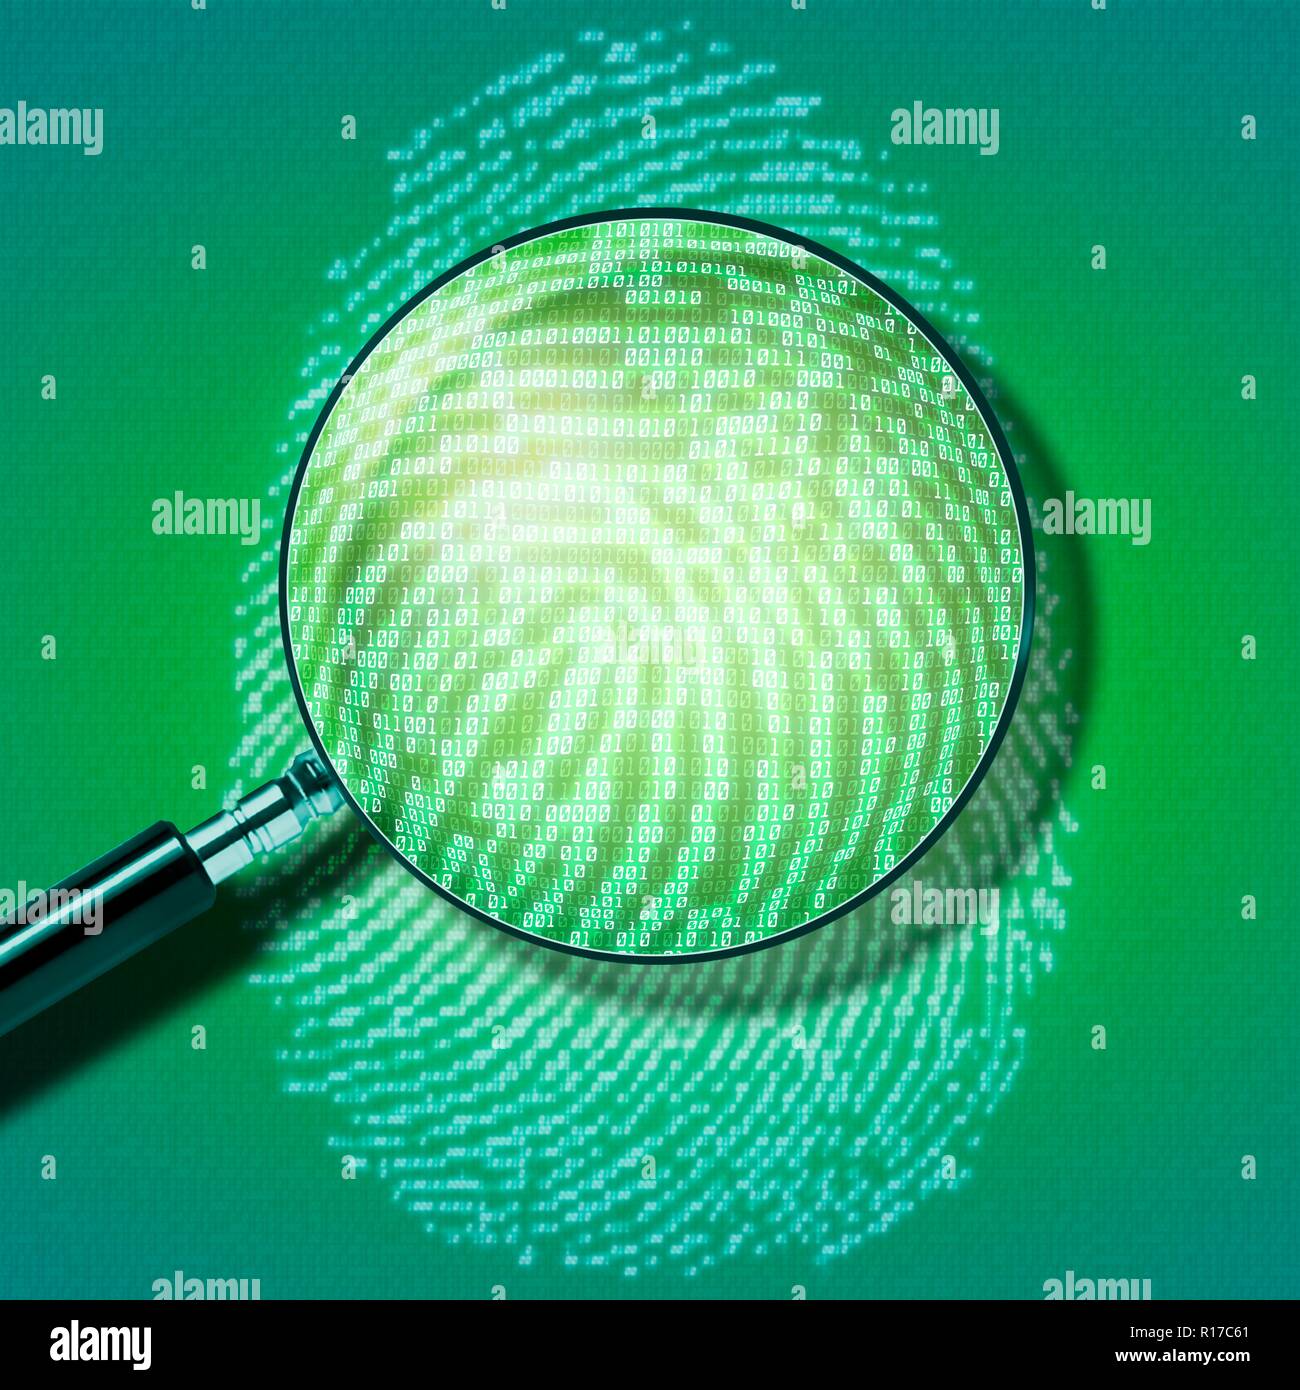 Digitaler Fingerabdruck. Abbildung eines menschlichen Fingerabdruck dargestellt als eine Reihe von Einsen und Nullen, die binären Code in Computing verwendet. Eine Lupe angezeigt wird, die Prüfung des Drucken. Stockfoto